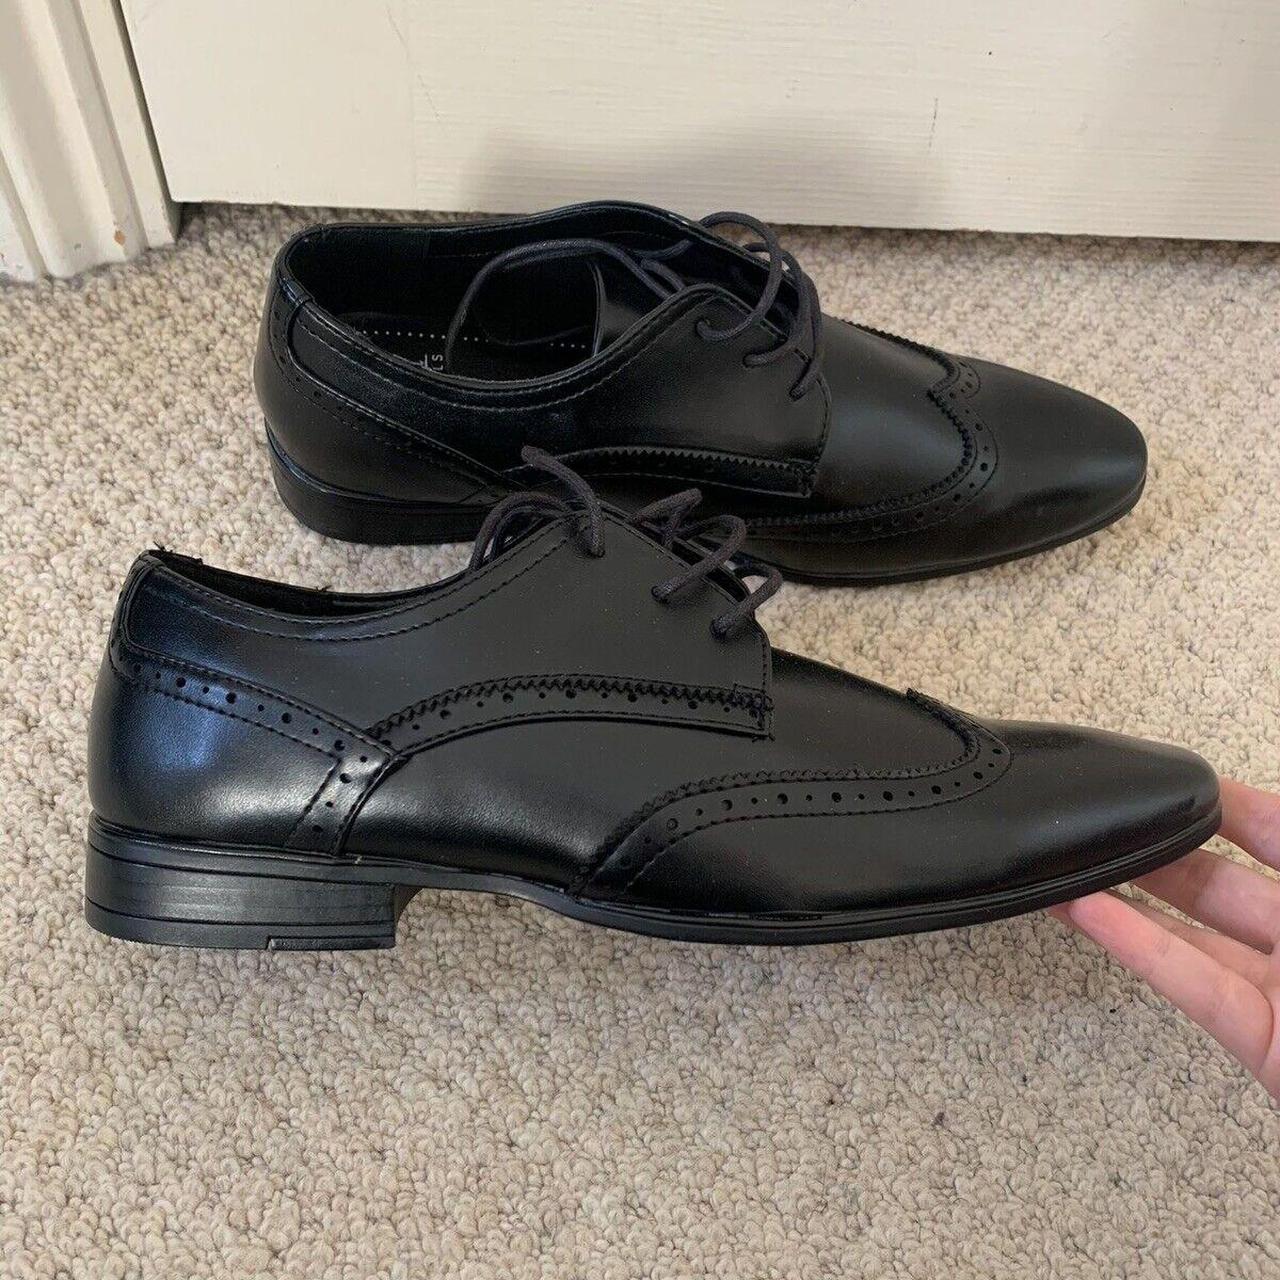 black smart formal shoes mens size 7 with labels - Depop